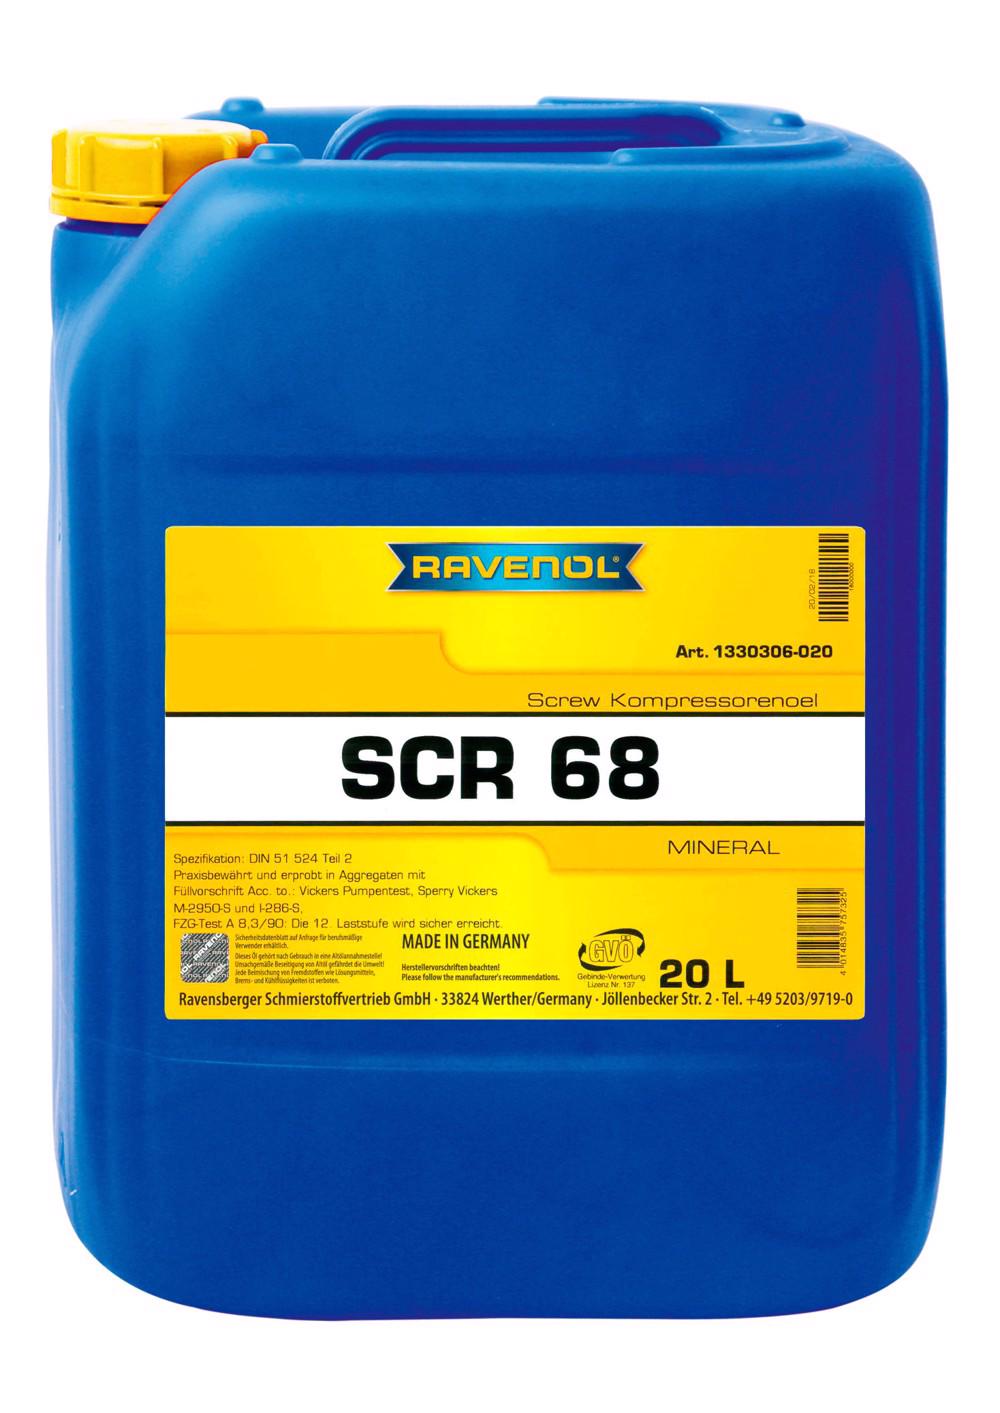 RAVENOL SCR 68 Screw Kompressorenoel  20 L